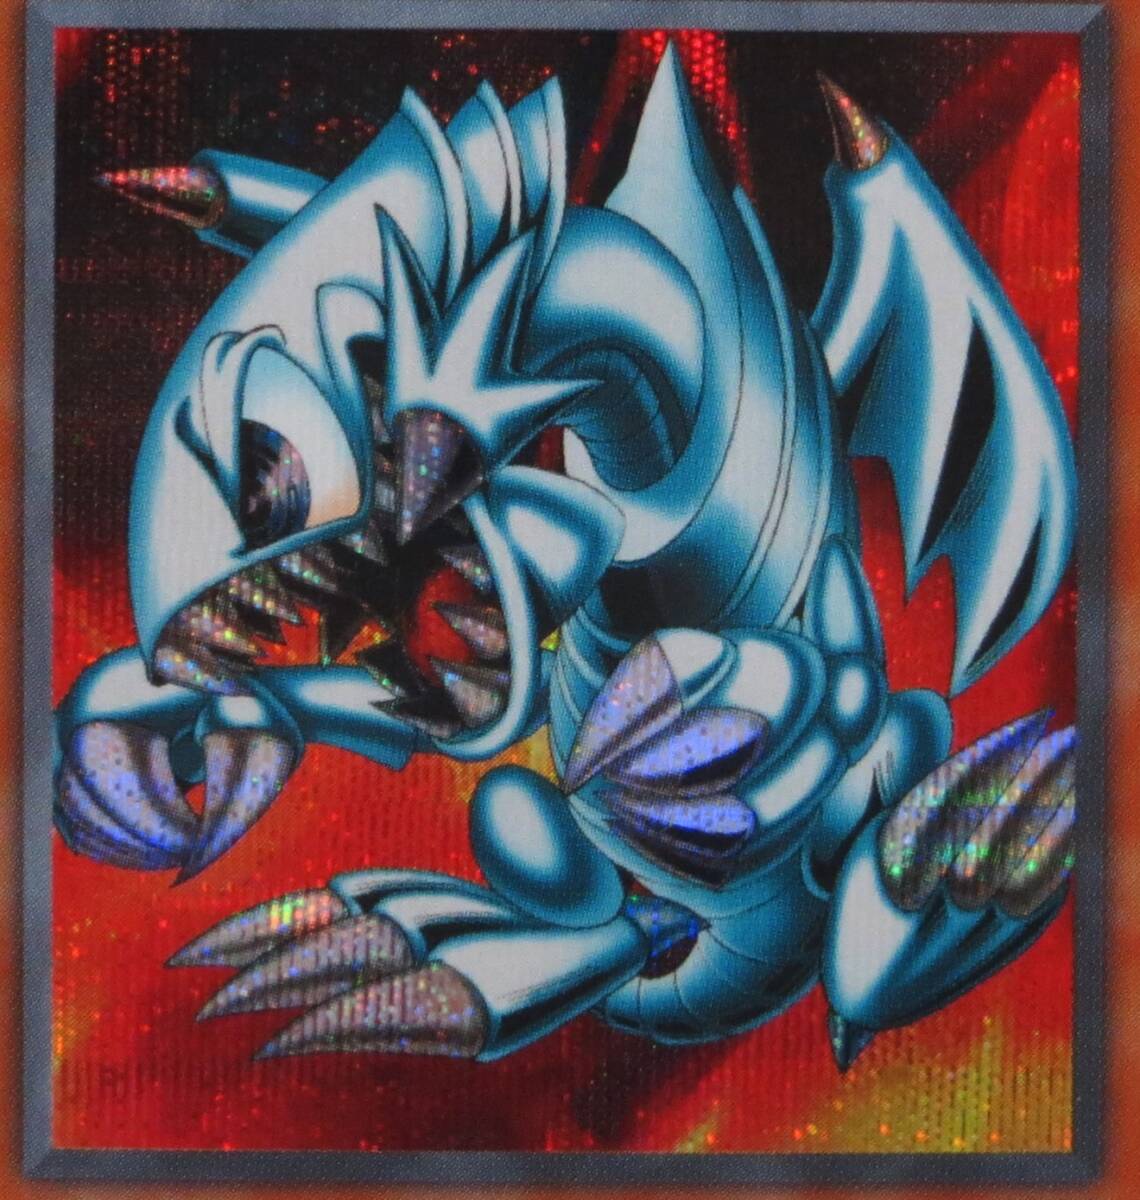 遊戯王・ブルーアイズ・トゥーン・ドラゴン・PS-00・初期・カード名銀色・53183600・あとは写真をじっくりご覧ください_画像2